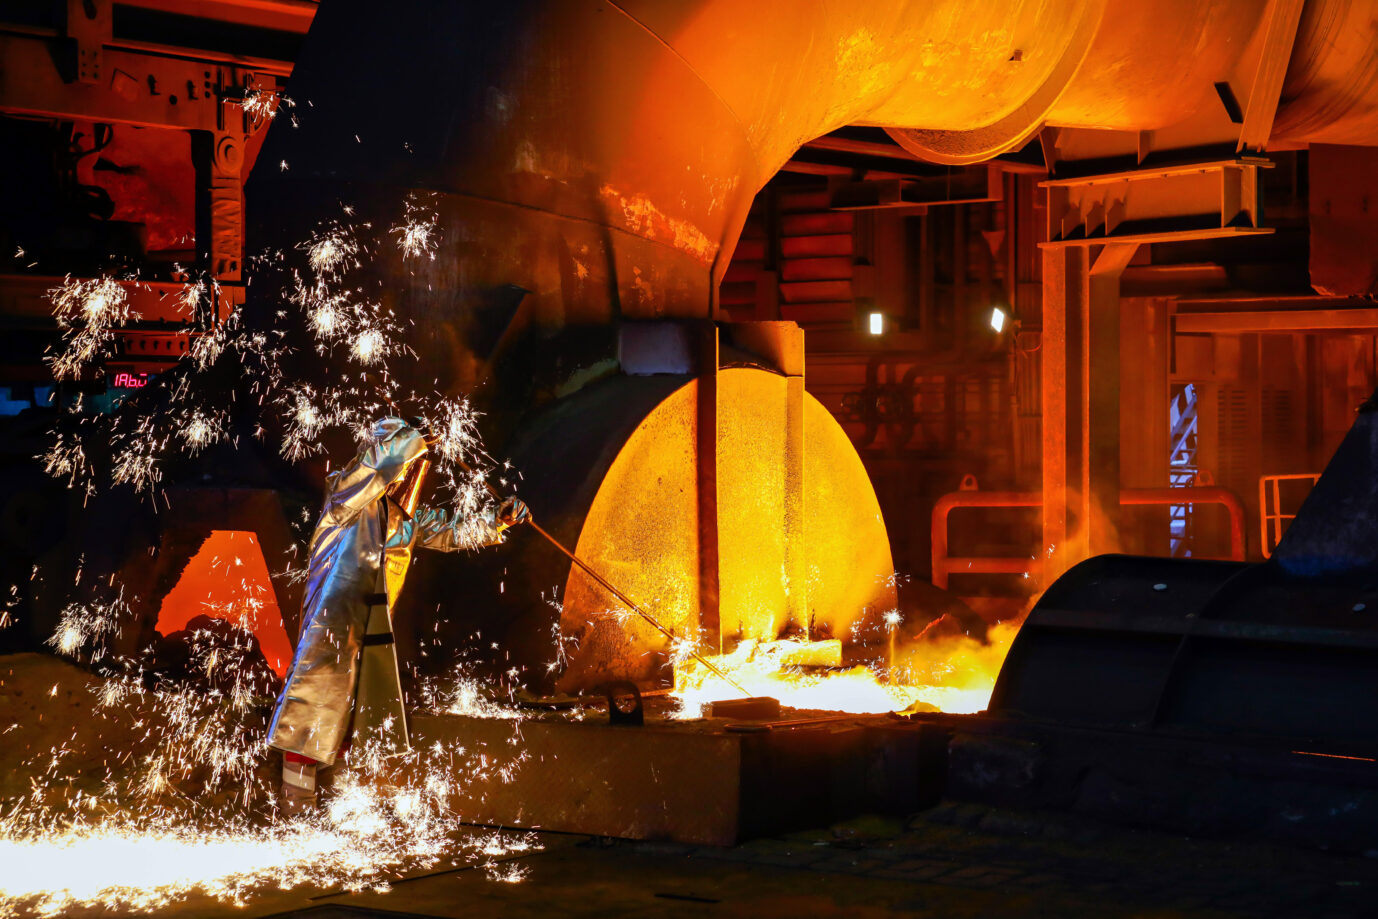 Auf dem Foto befindet sich ein Prozess der Stahlproduktion im Duisburger Thyssenkrupp-Werk. (Symbolbild)